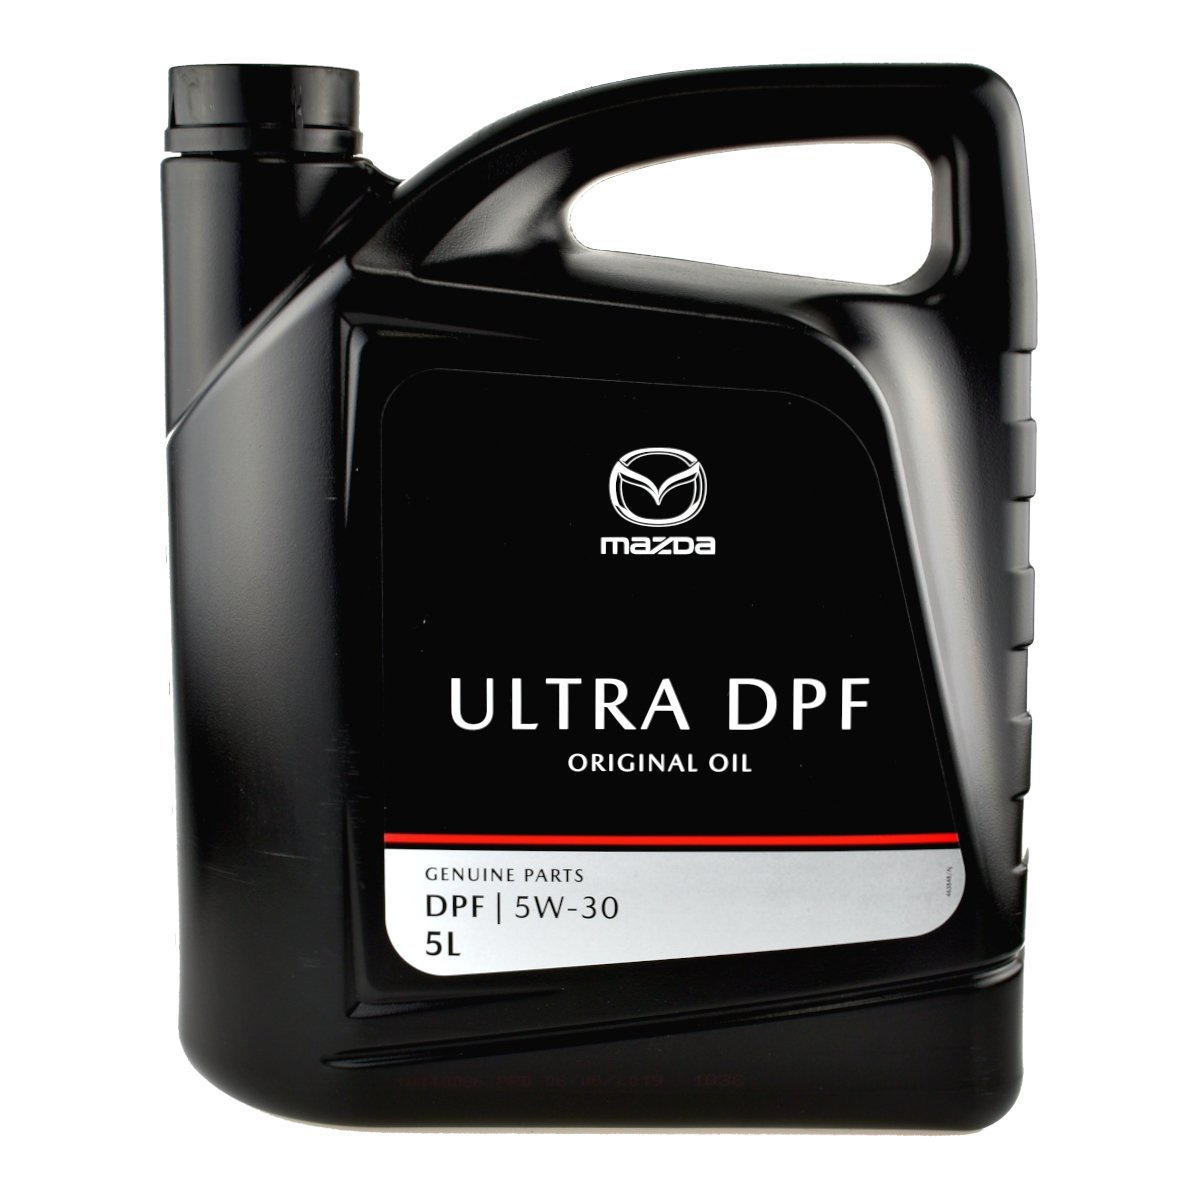 Olej silnikowy Dexelia DPF 5W/30 Mazda 5L • autokosmetyki